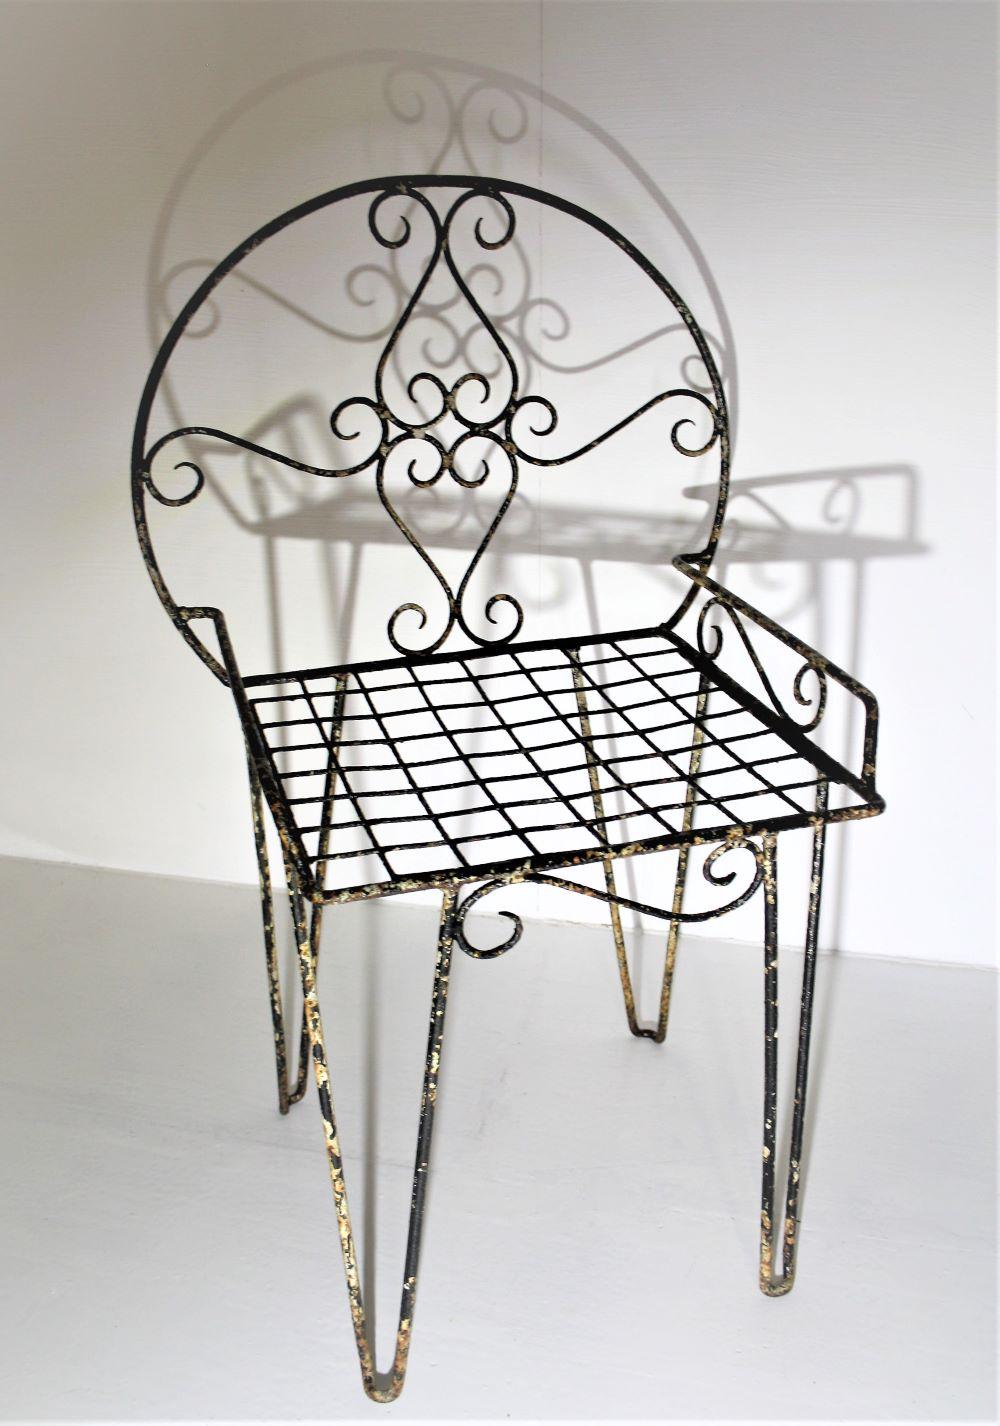 Une magnifique chaise simple en métal ouvragé avec une patine parfaite, telle qu'elle a été trouvée.
Jolis détails de volutes, une belle pièce décorative.
Une légère couche de cire a été appliquée sur la surface pour préserver l'usure et la patine